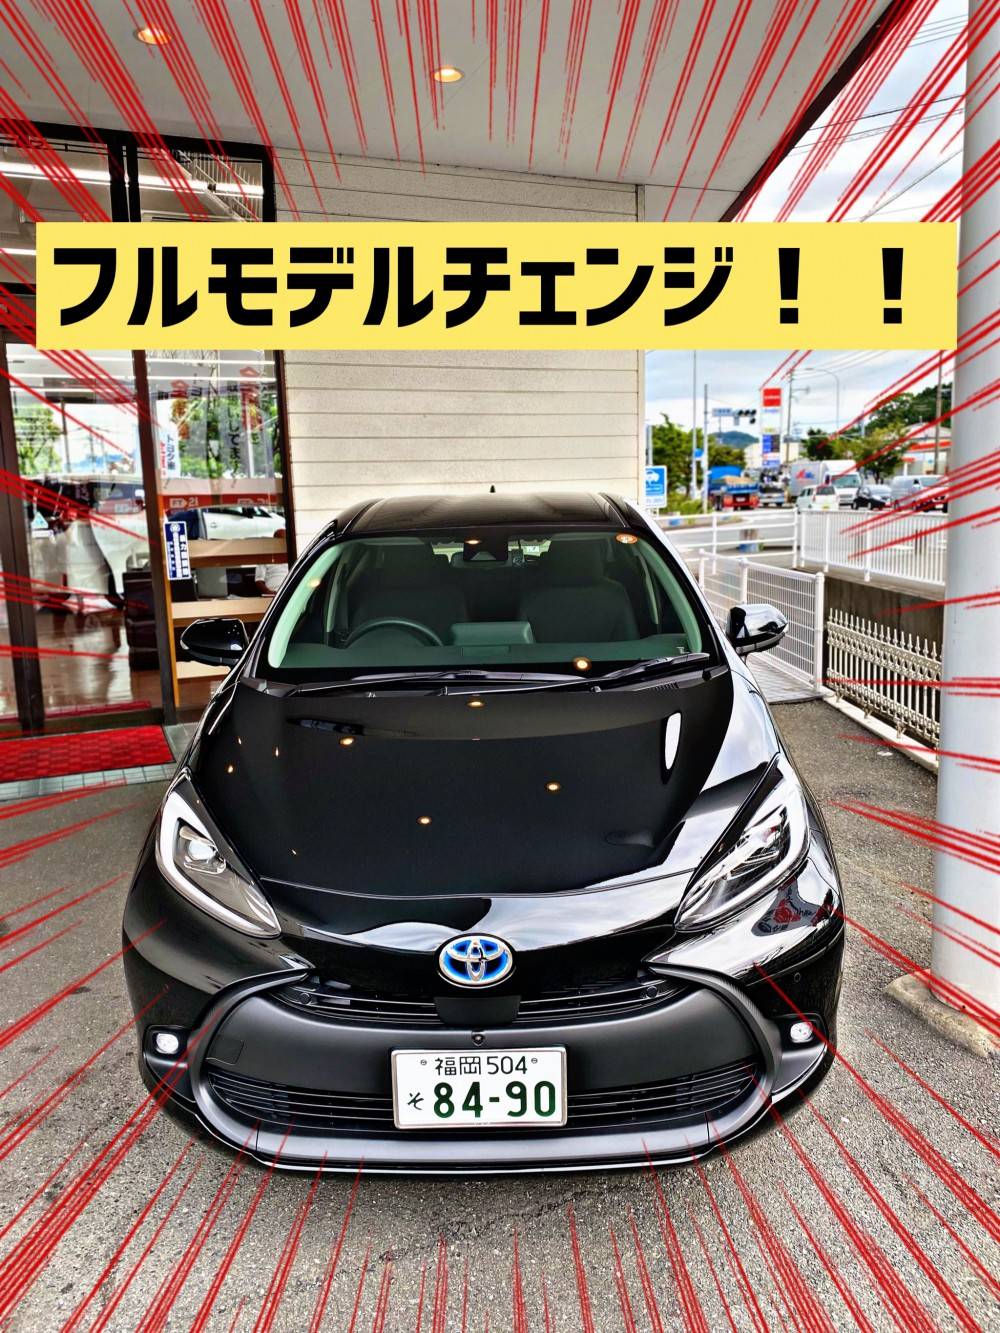 志免店 店舗ブログ 福岡トヨタ自動車